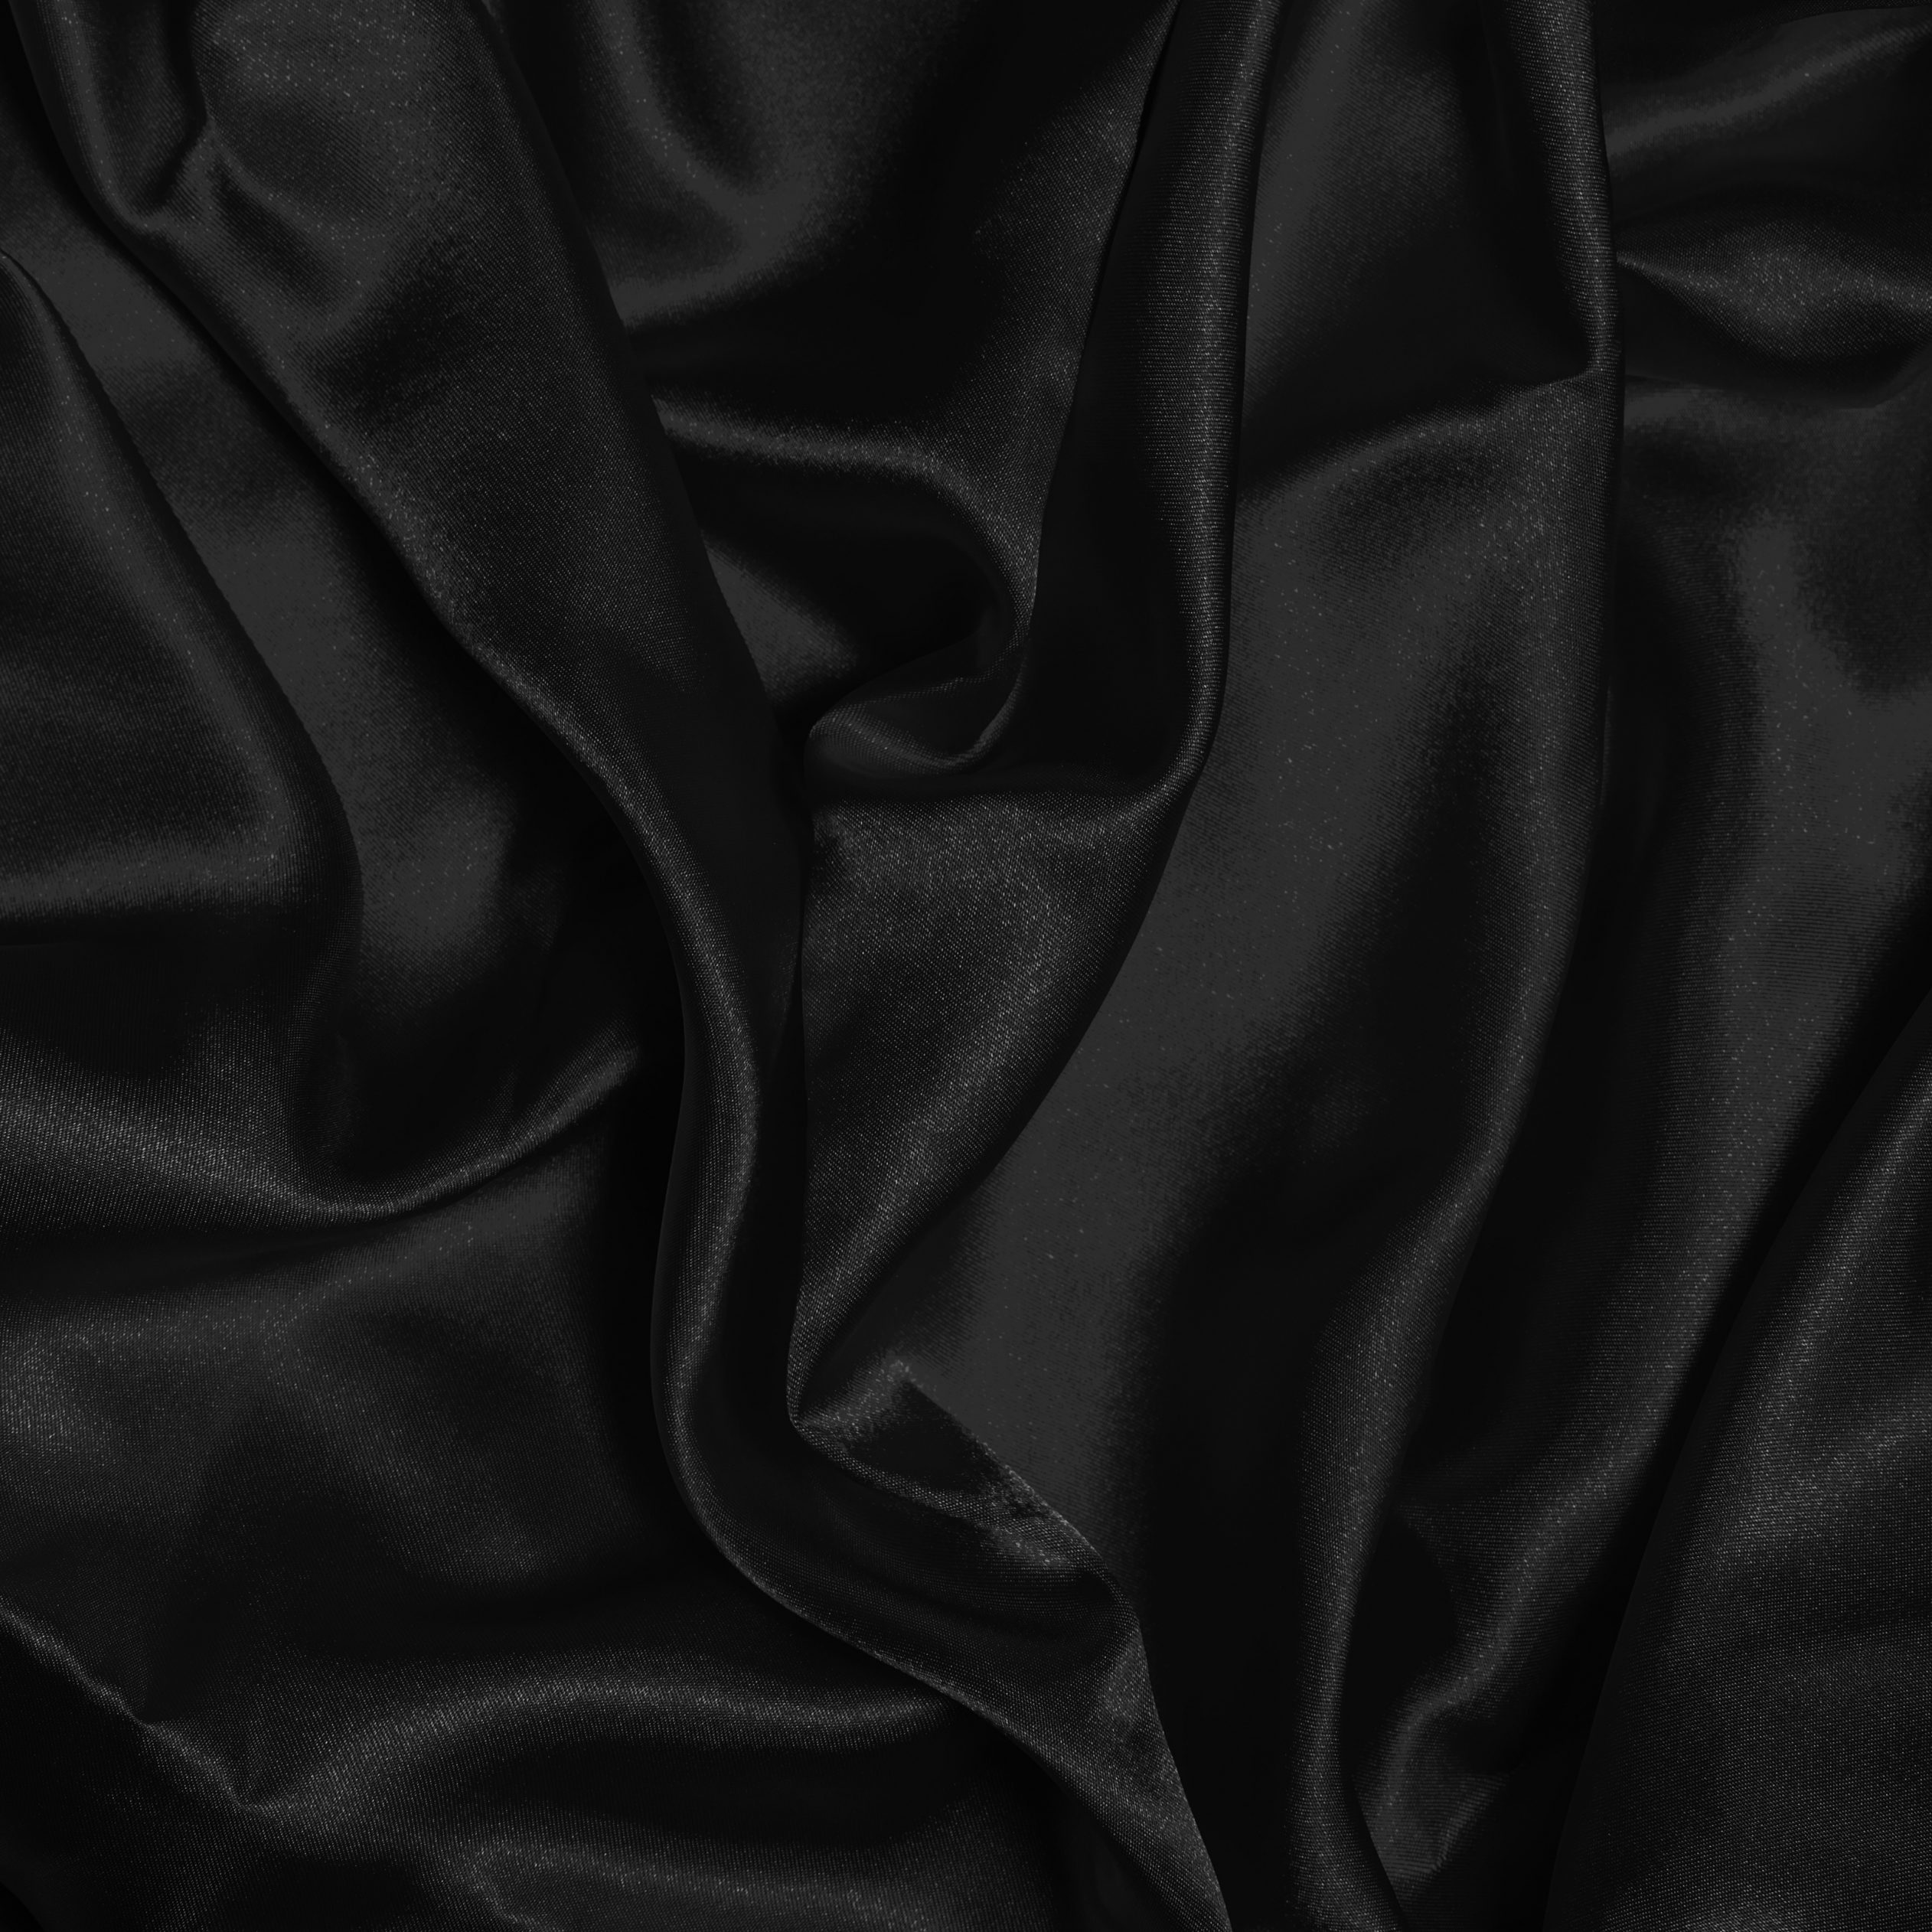 Black Fabric Silky Ipad Wallpaper Hd Ipad Wallpapers 4k Ipad